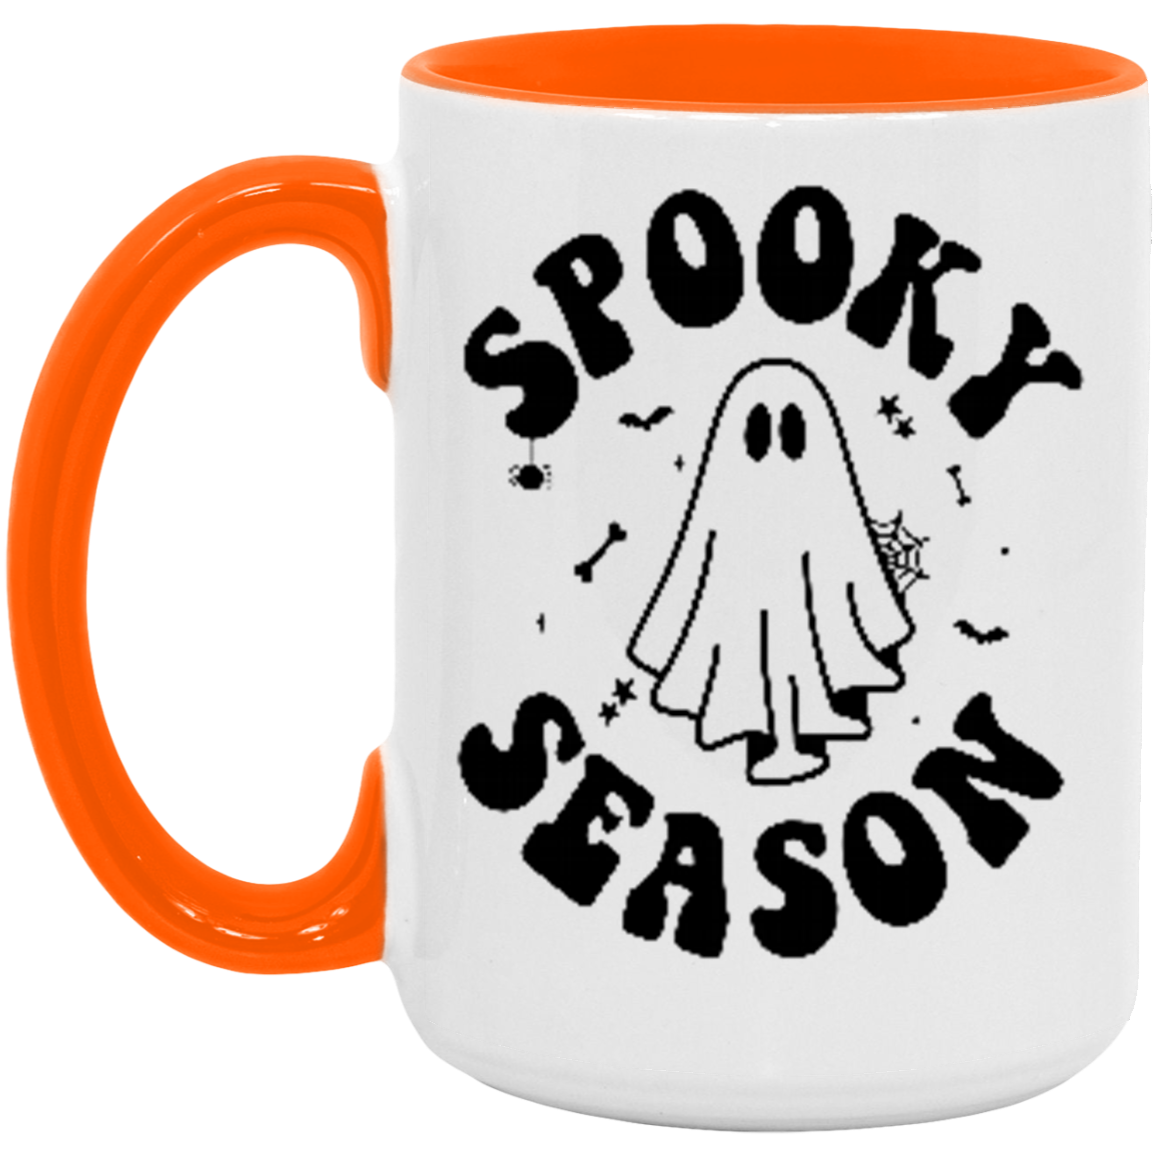 Spooky Season Mug